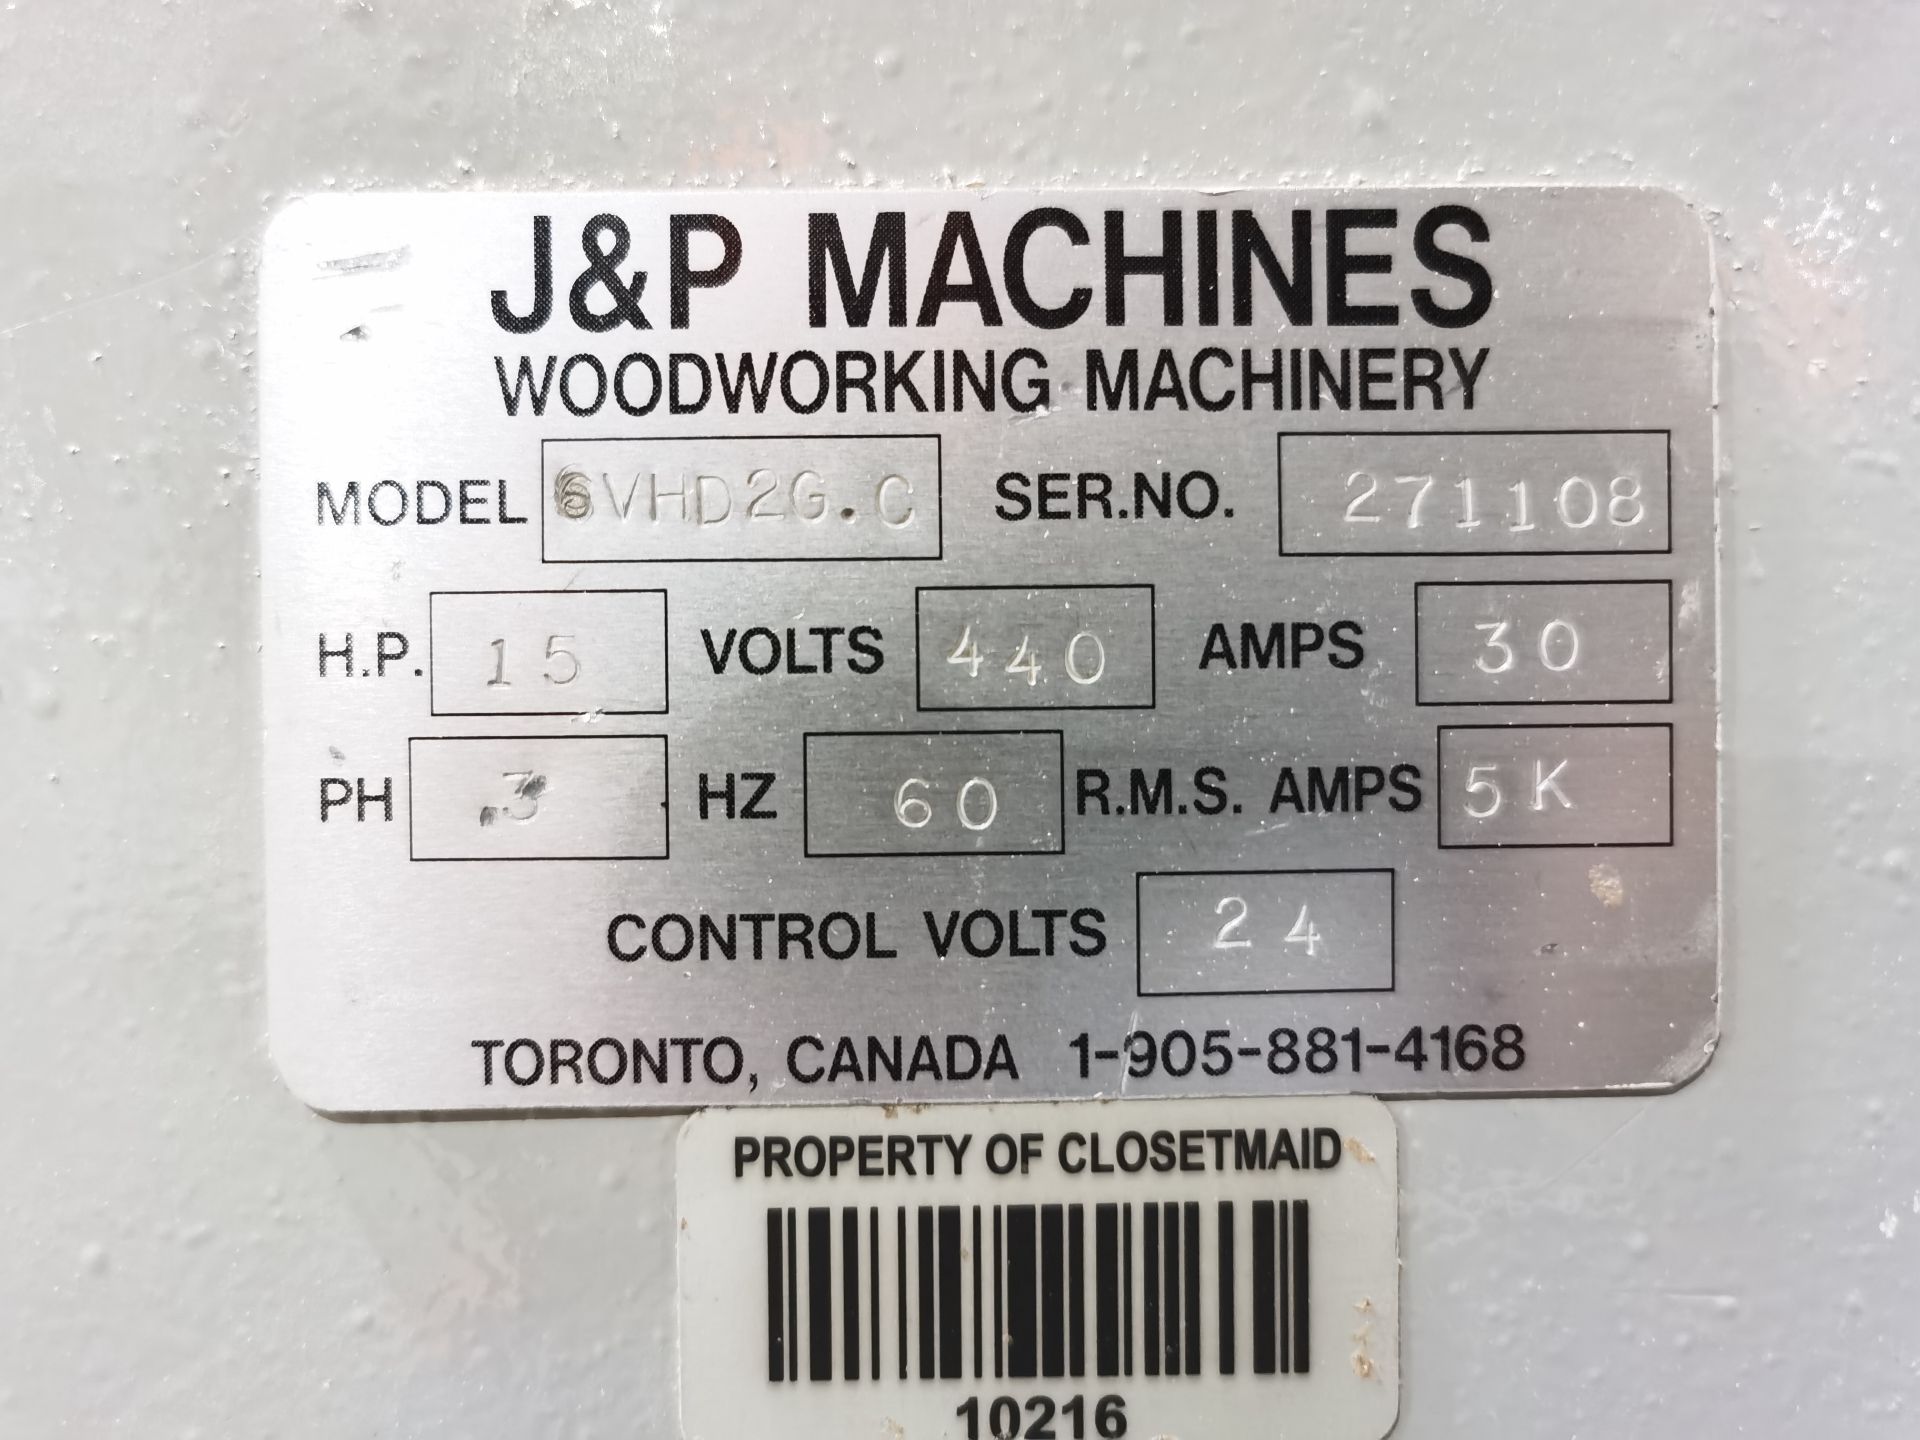 J&P Drawer Sides Drilling Machine, Model 6VHD2G.C, S/N 271108, 440 V / 60 Hz, 30 AMPS, ASSET NUMBER - Image 27 of 28